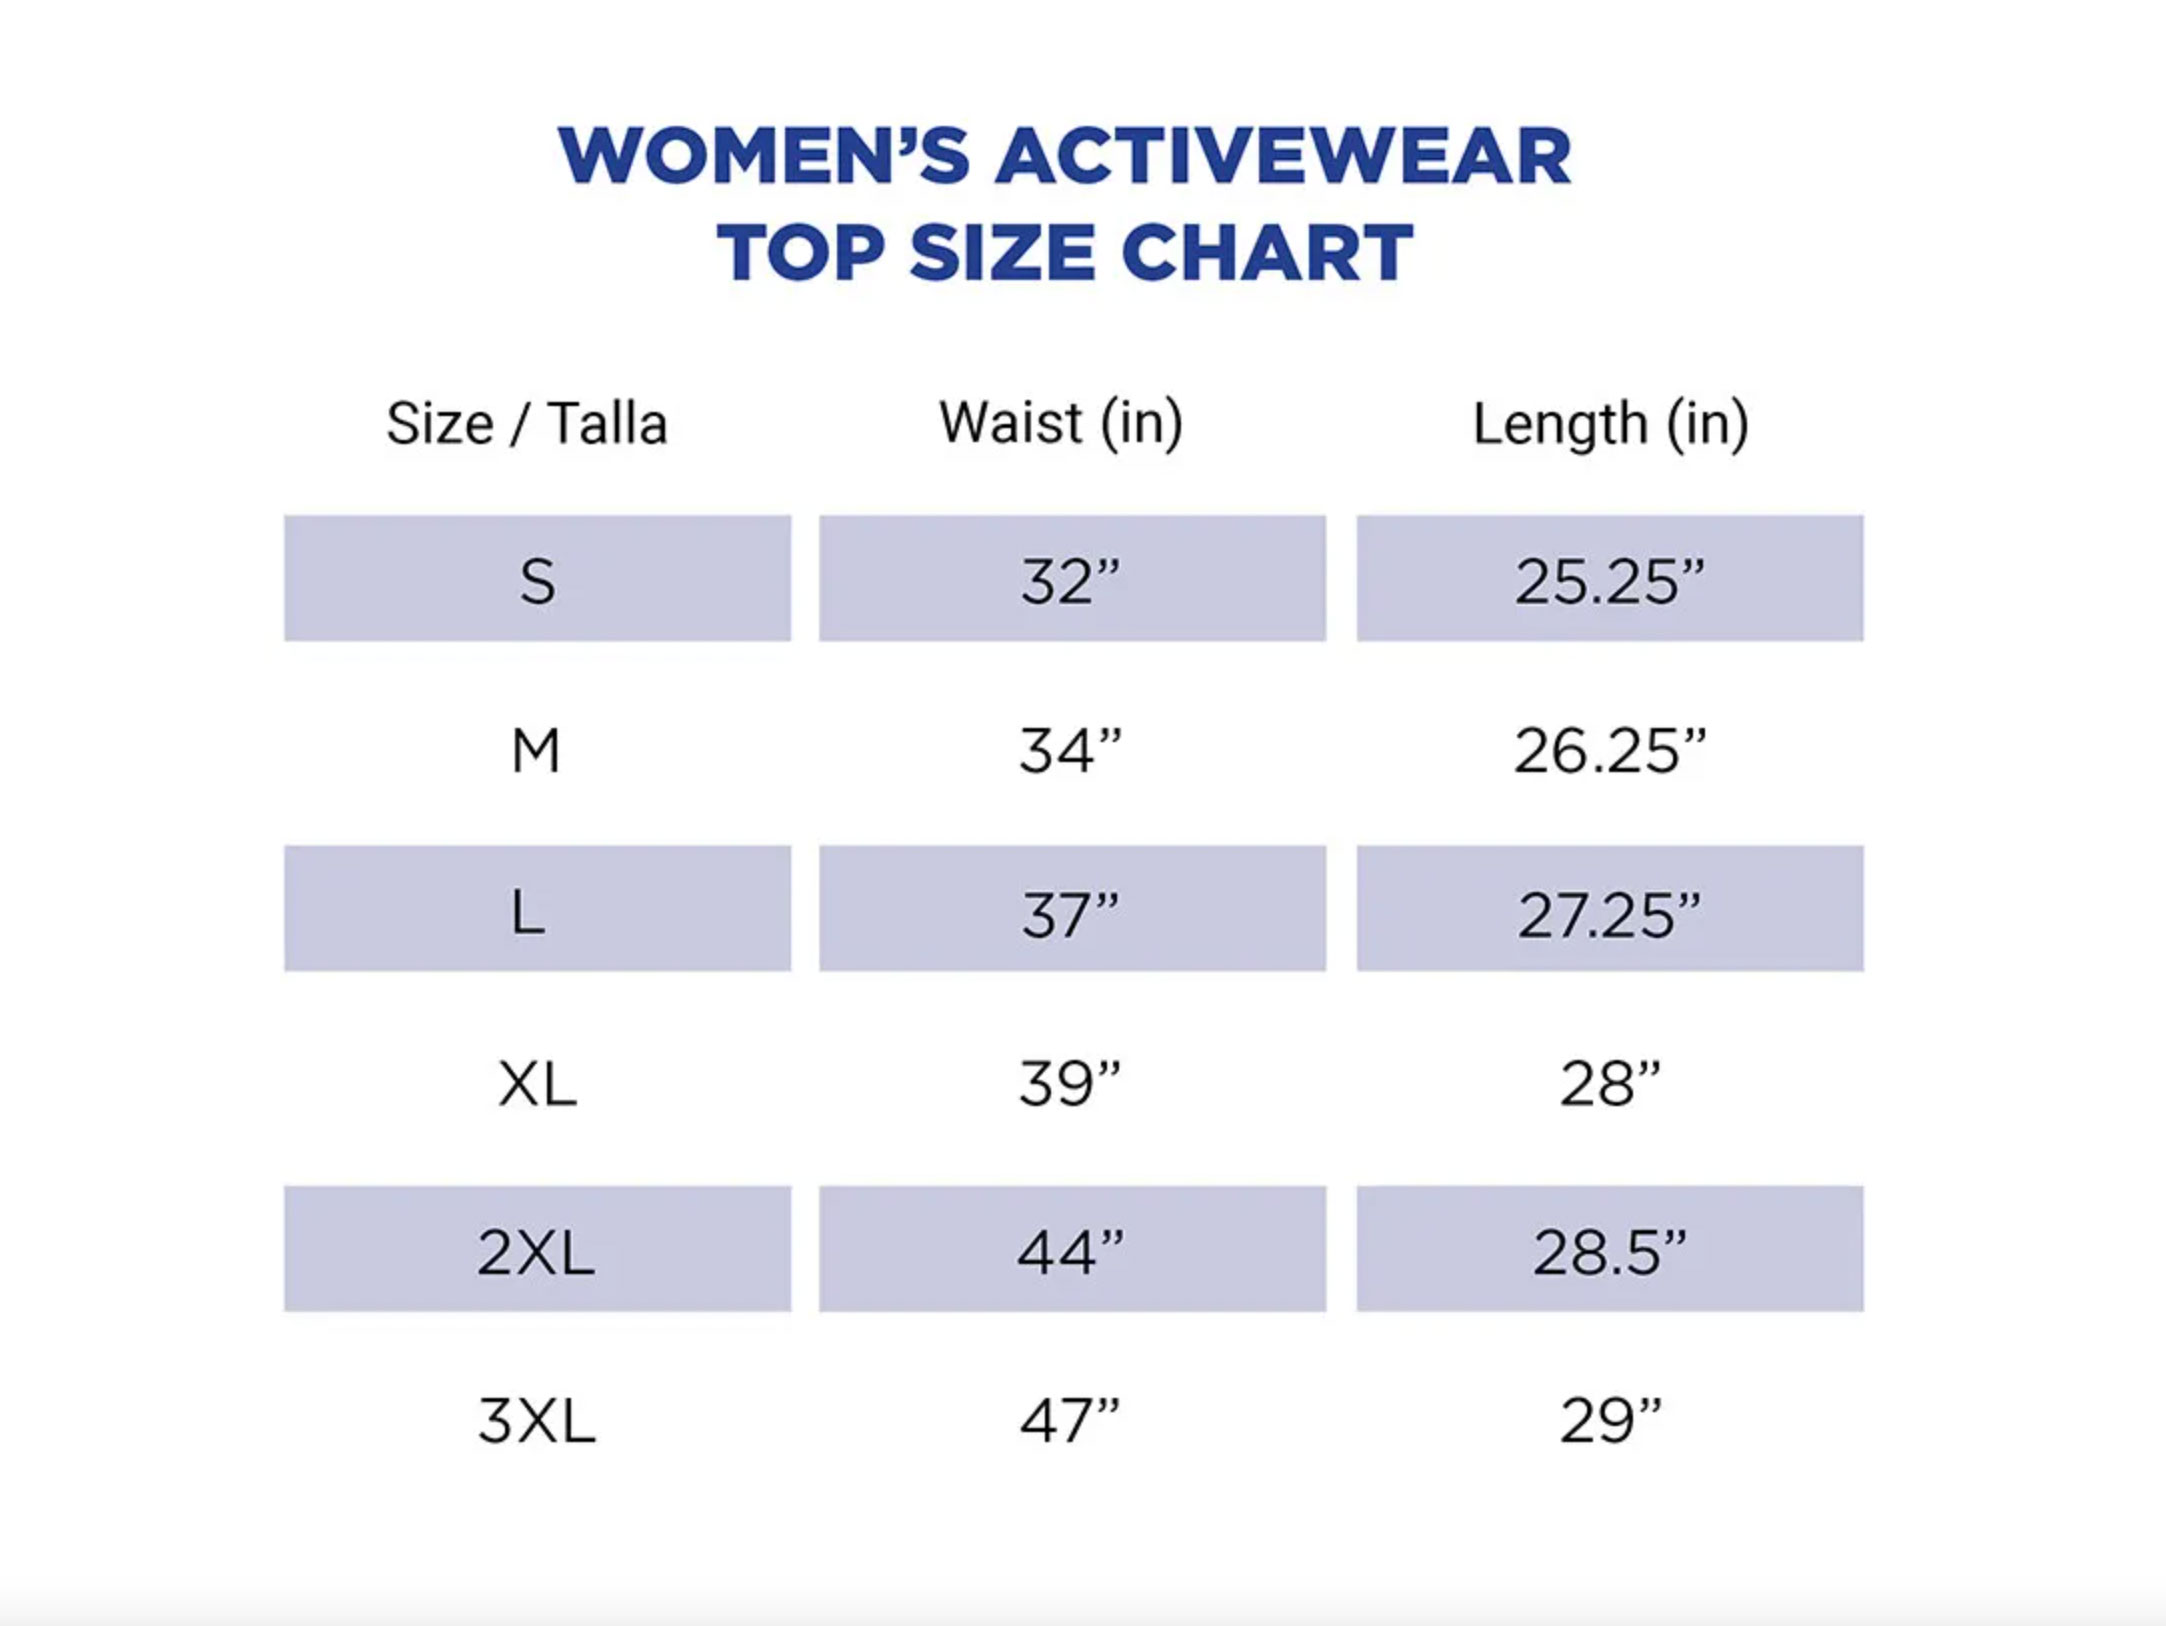 Gildan women's activewear top size chart.